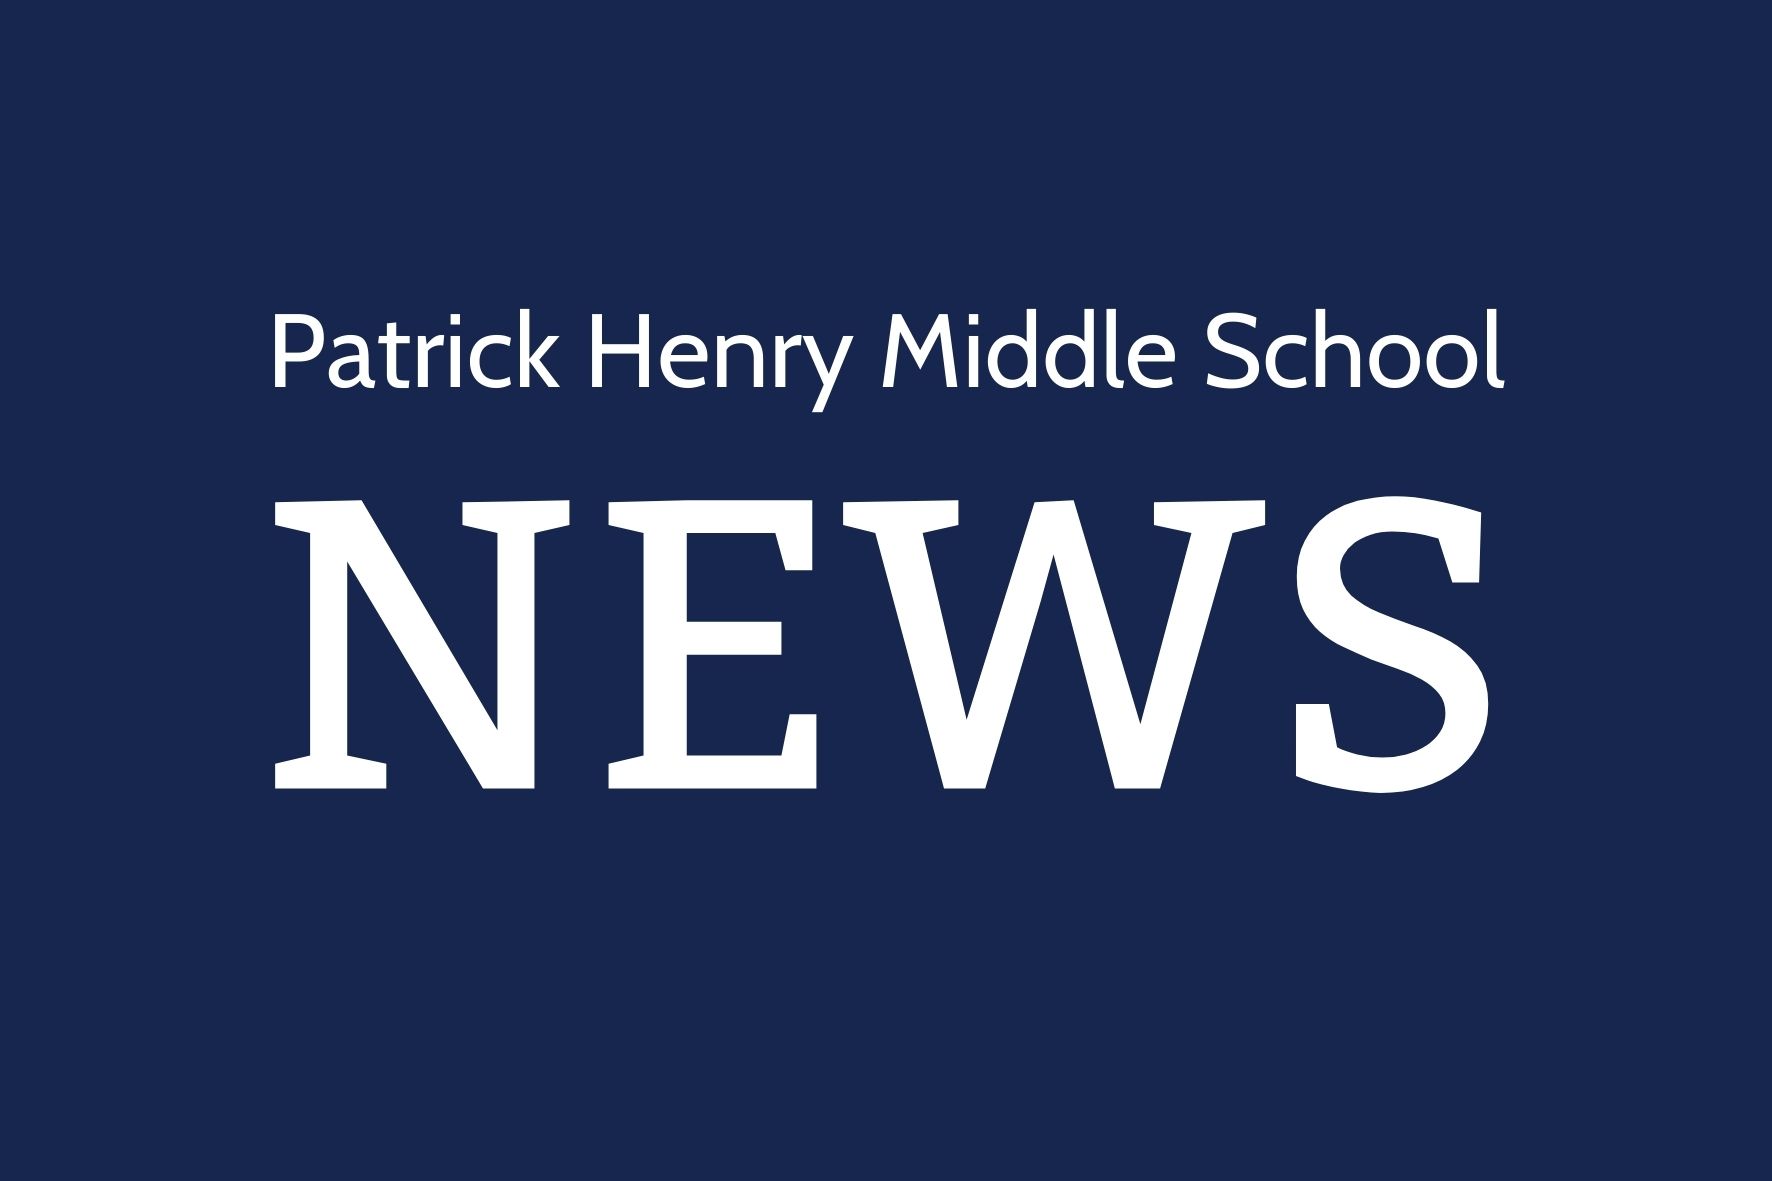 Patrick Henry Middle School